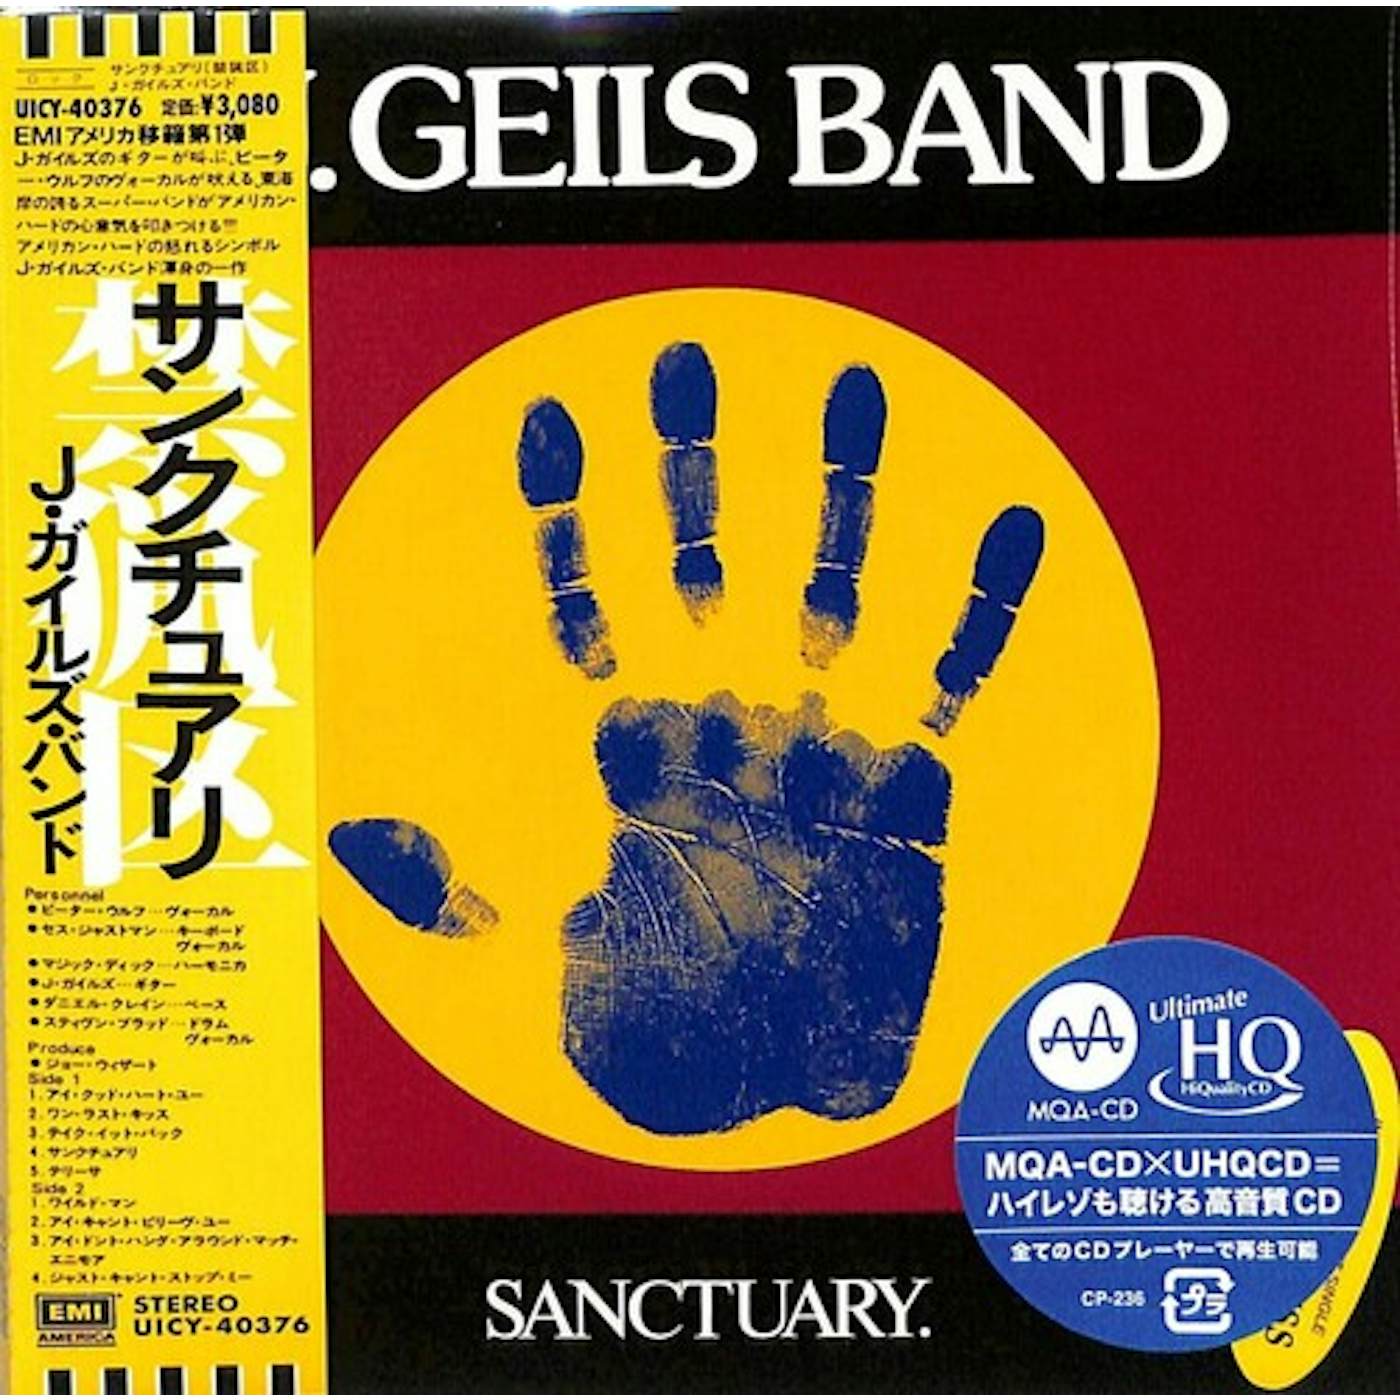 The J. Geils Band SANCTUARY CD